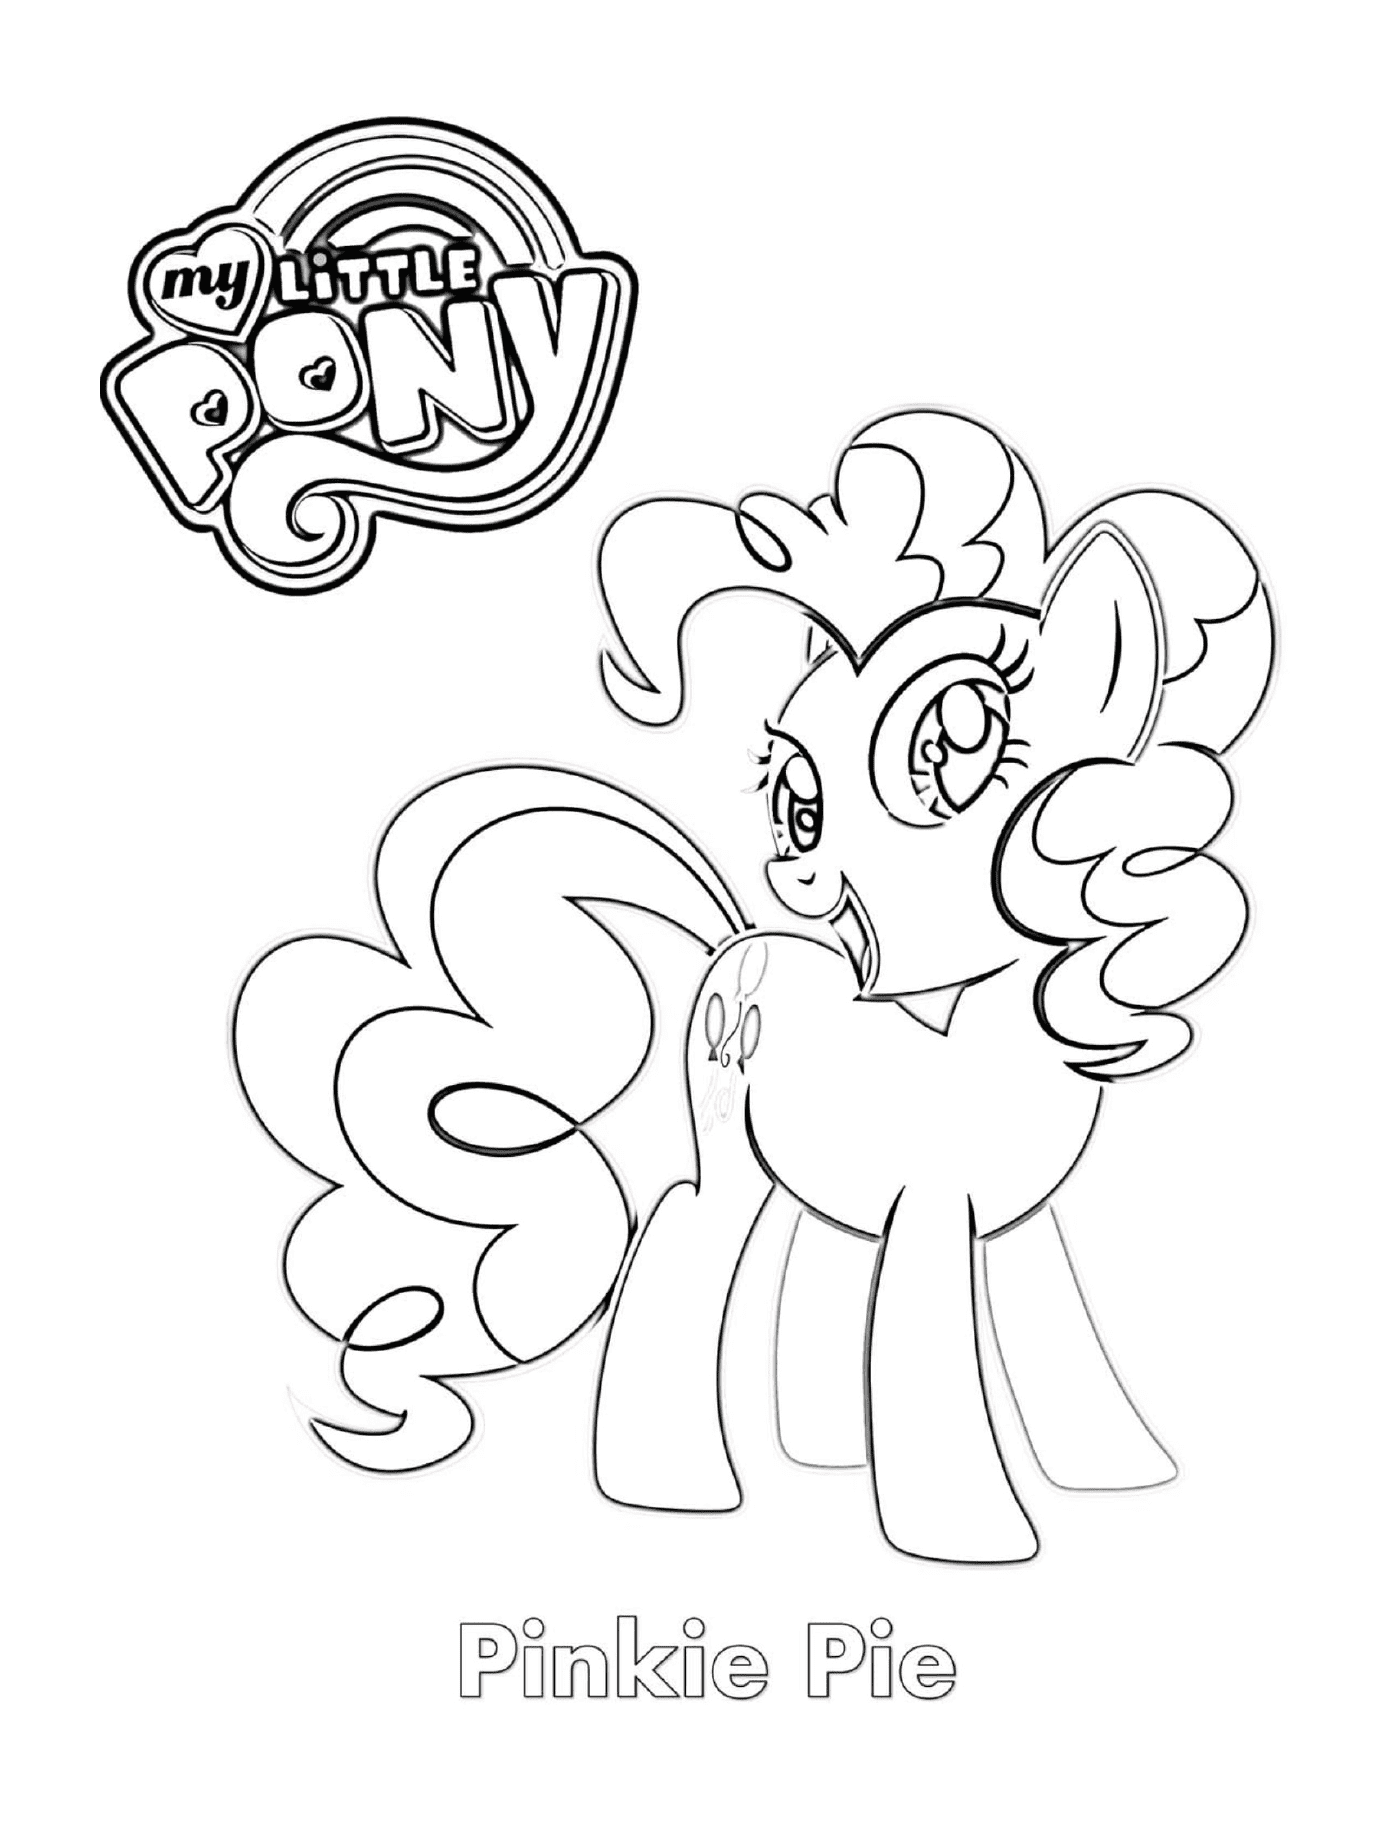  Pinkie Pie, un bel pony 